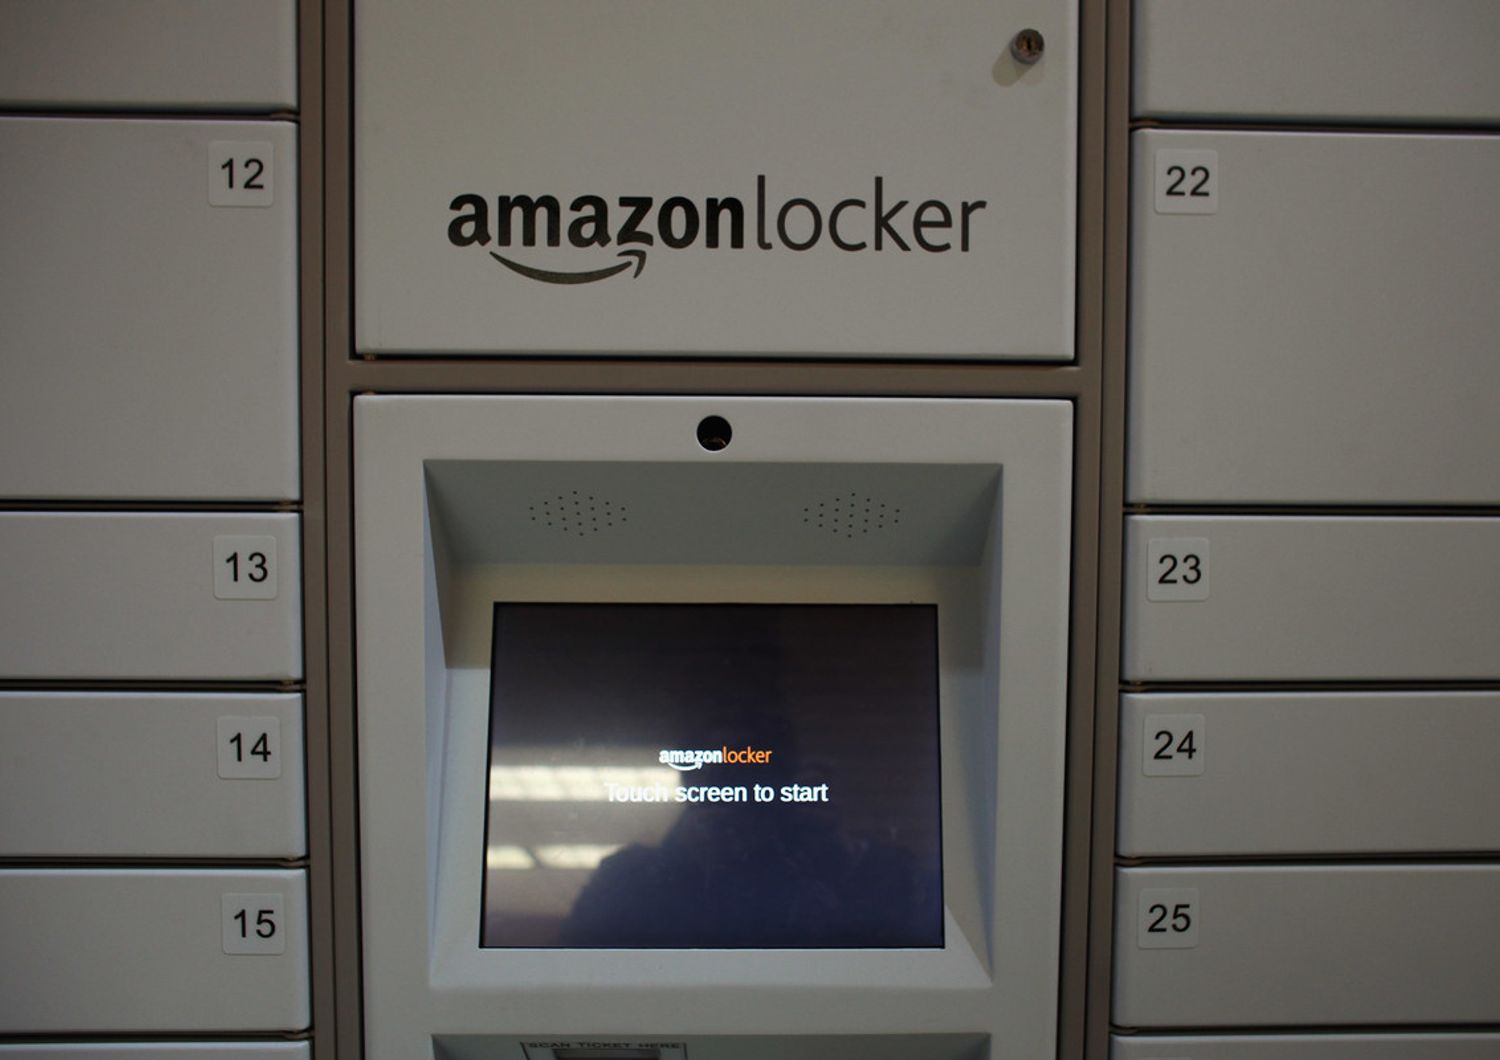 &nbsp;Amazon Locker